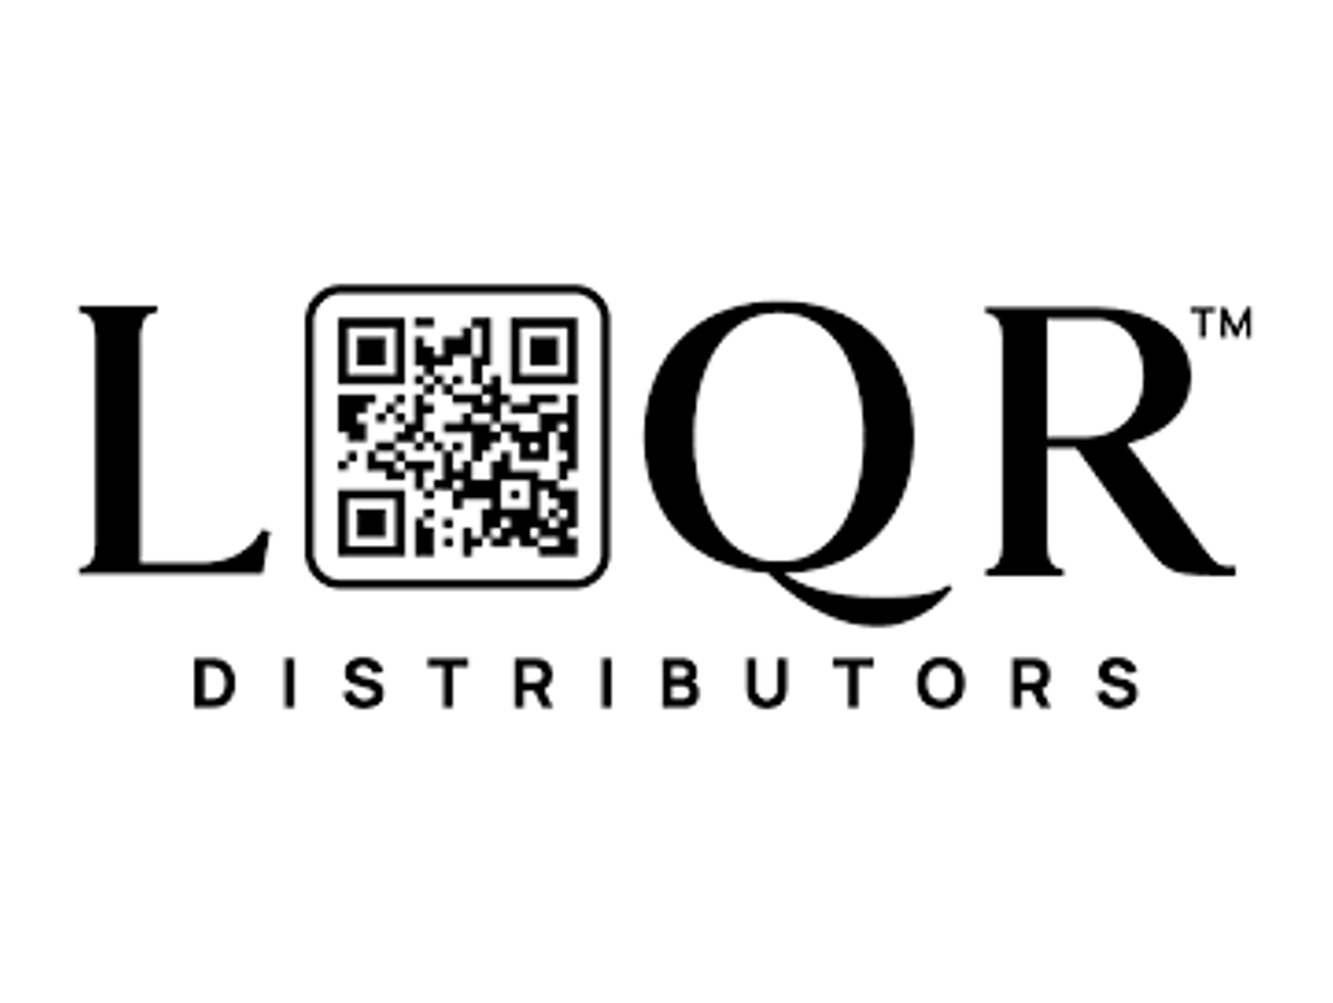 LQR Distributors